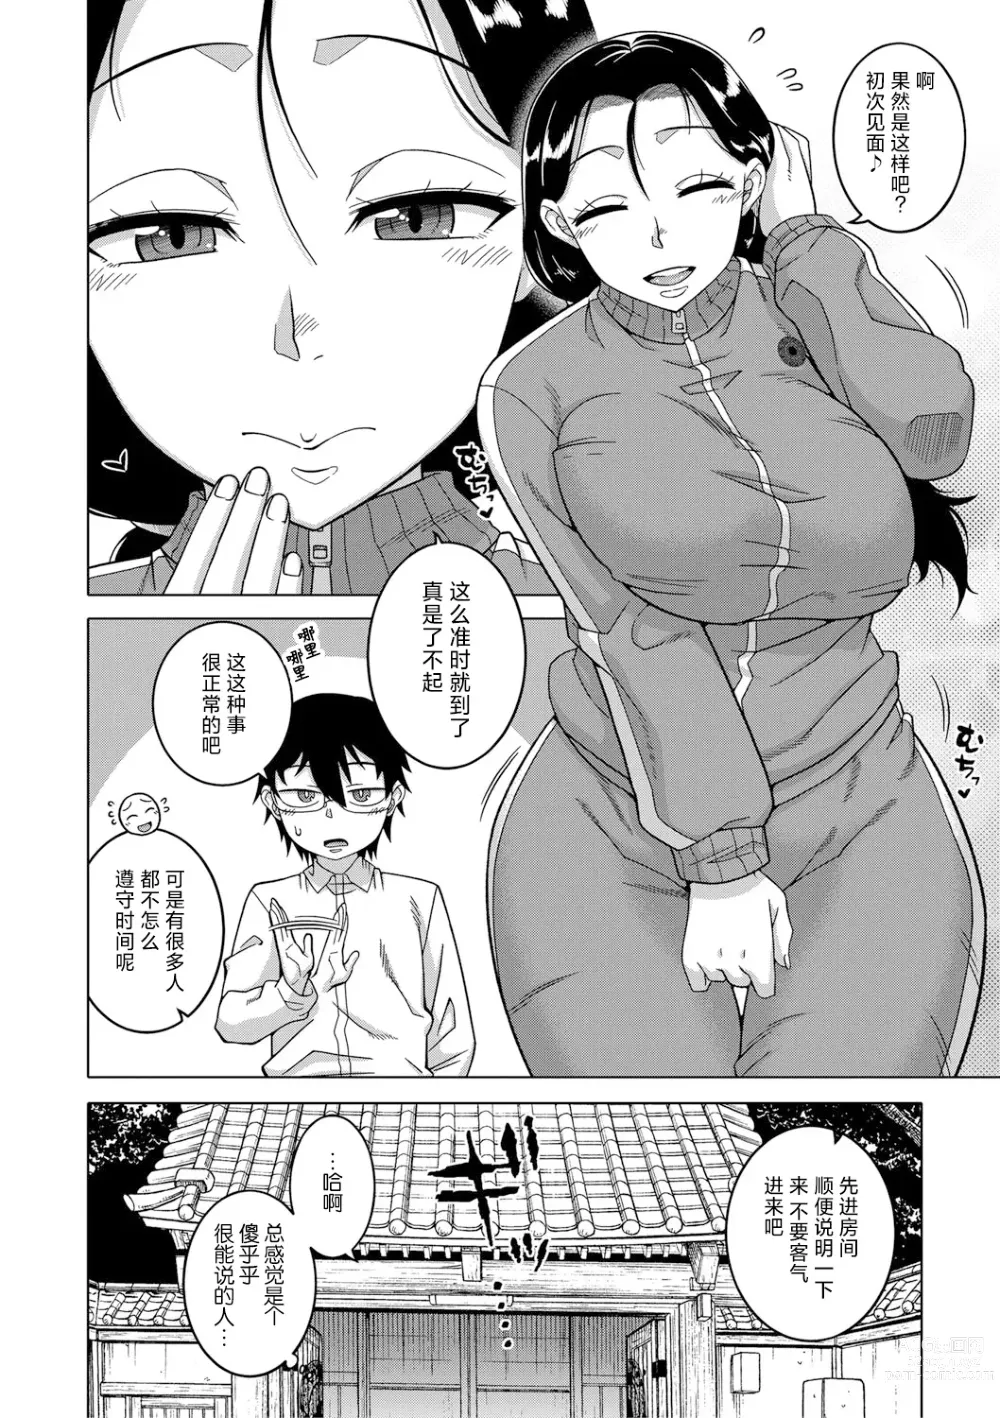 Page 7 of manga Kami-sama no Tsukurikata Ch. 1-5